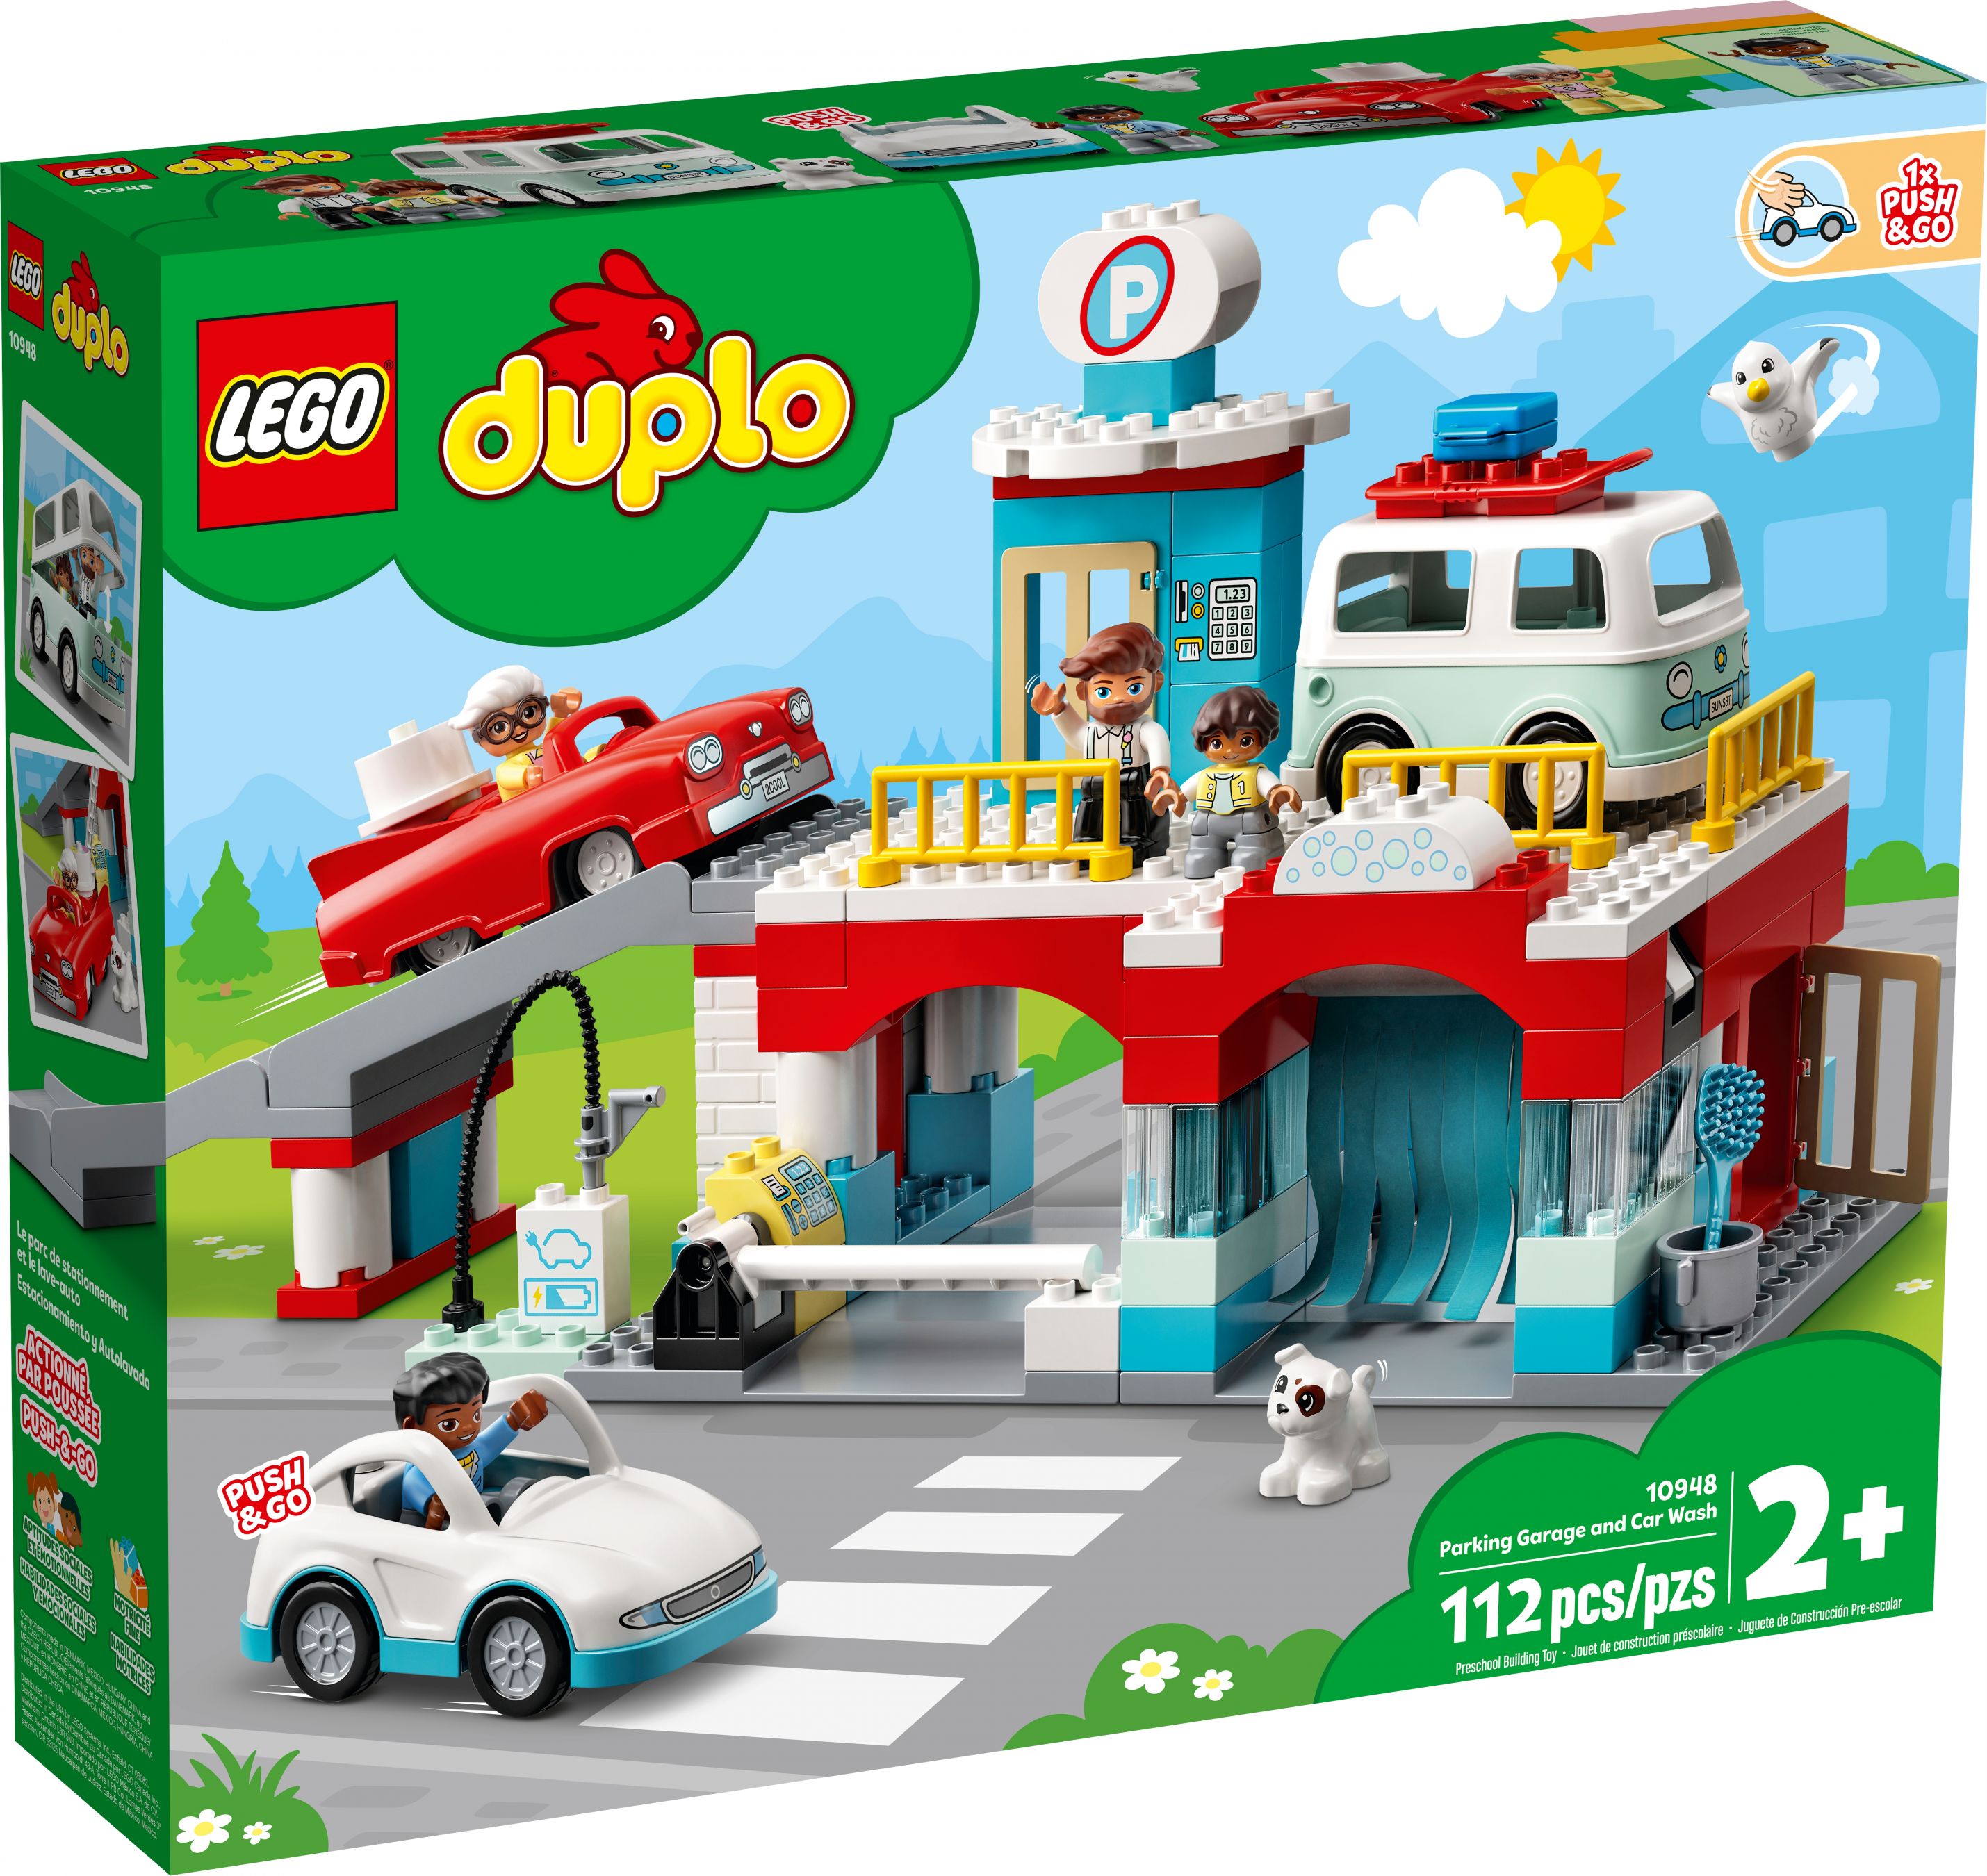 LEGO Duplo 10948 Parkhaus mit Autowaschanlage LEGO_10948_alt1.jpg